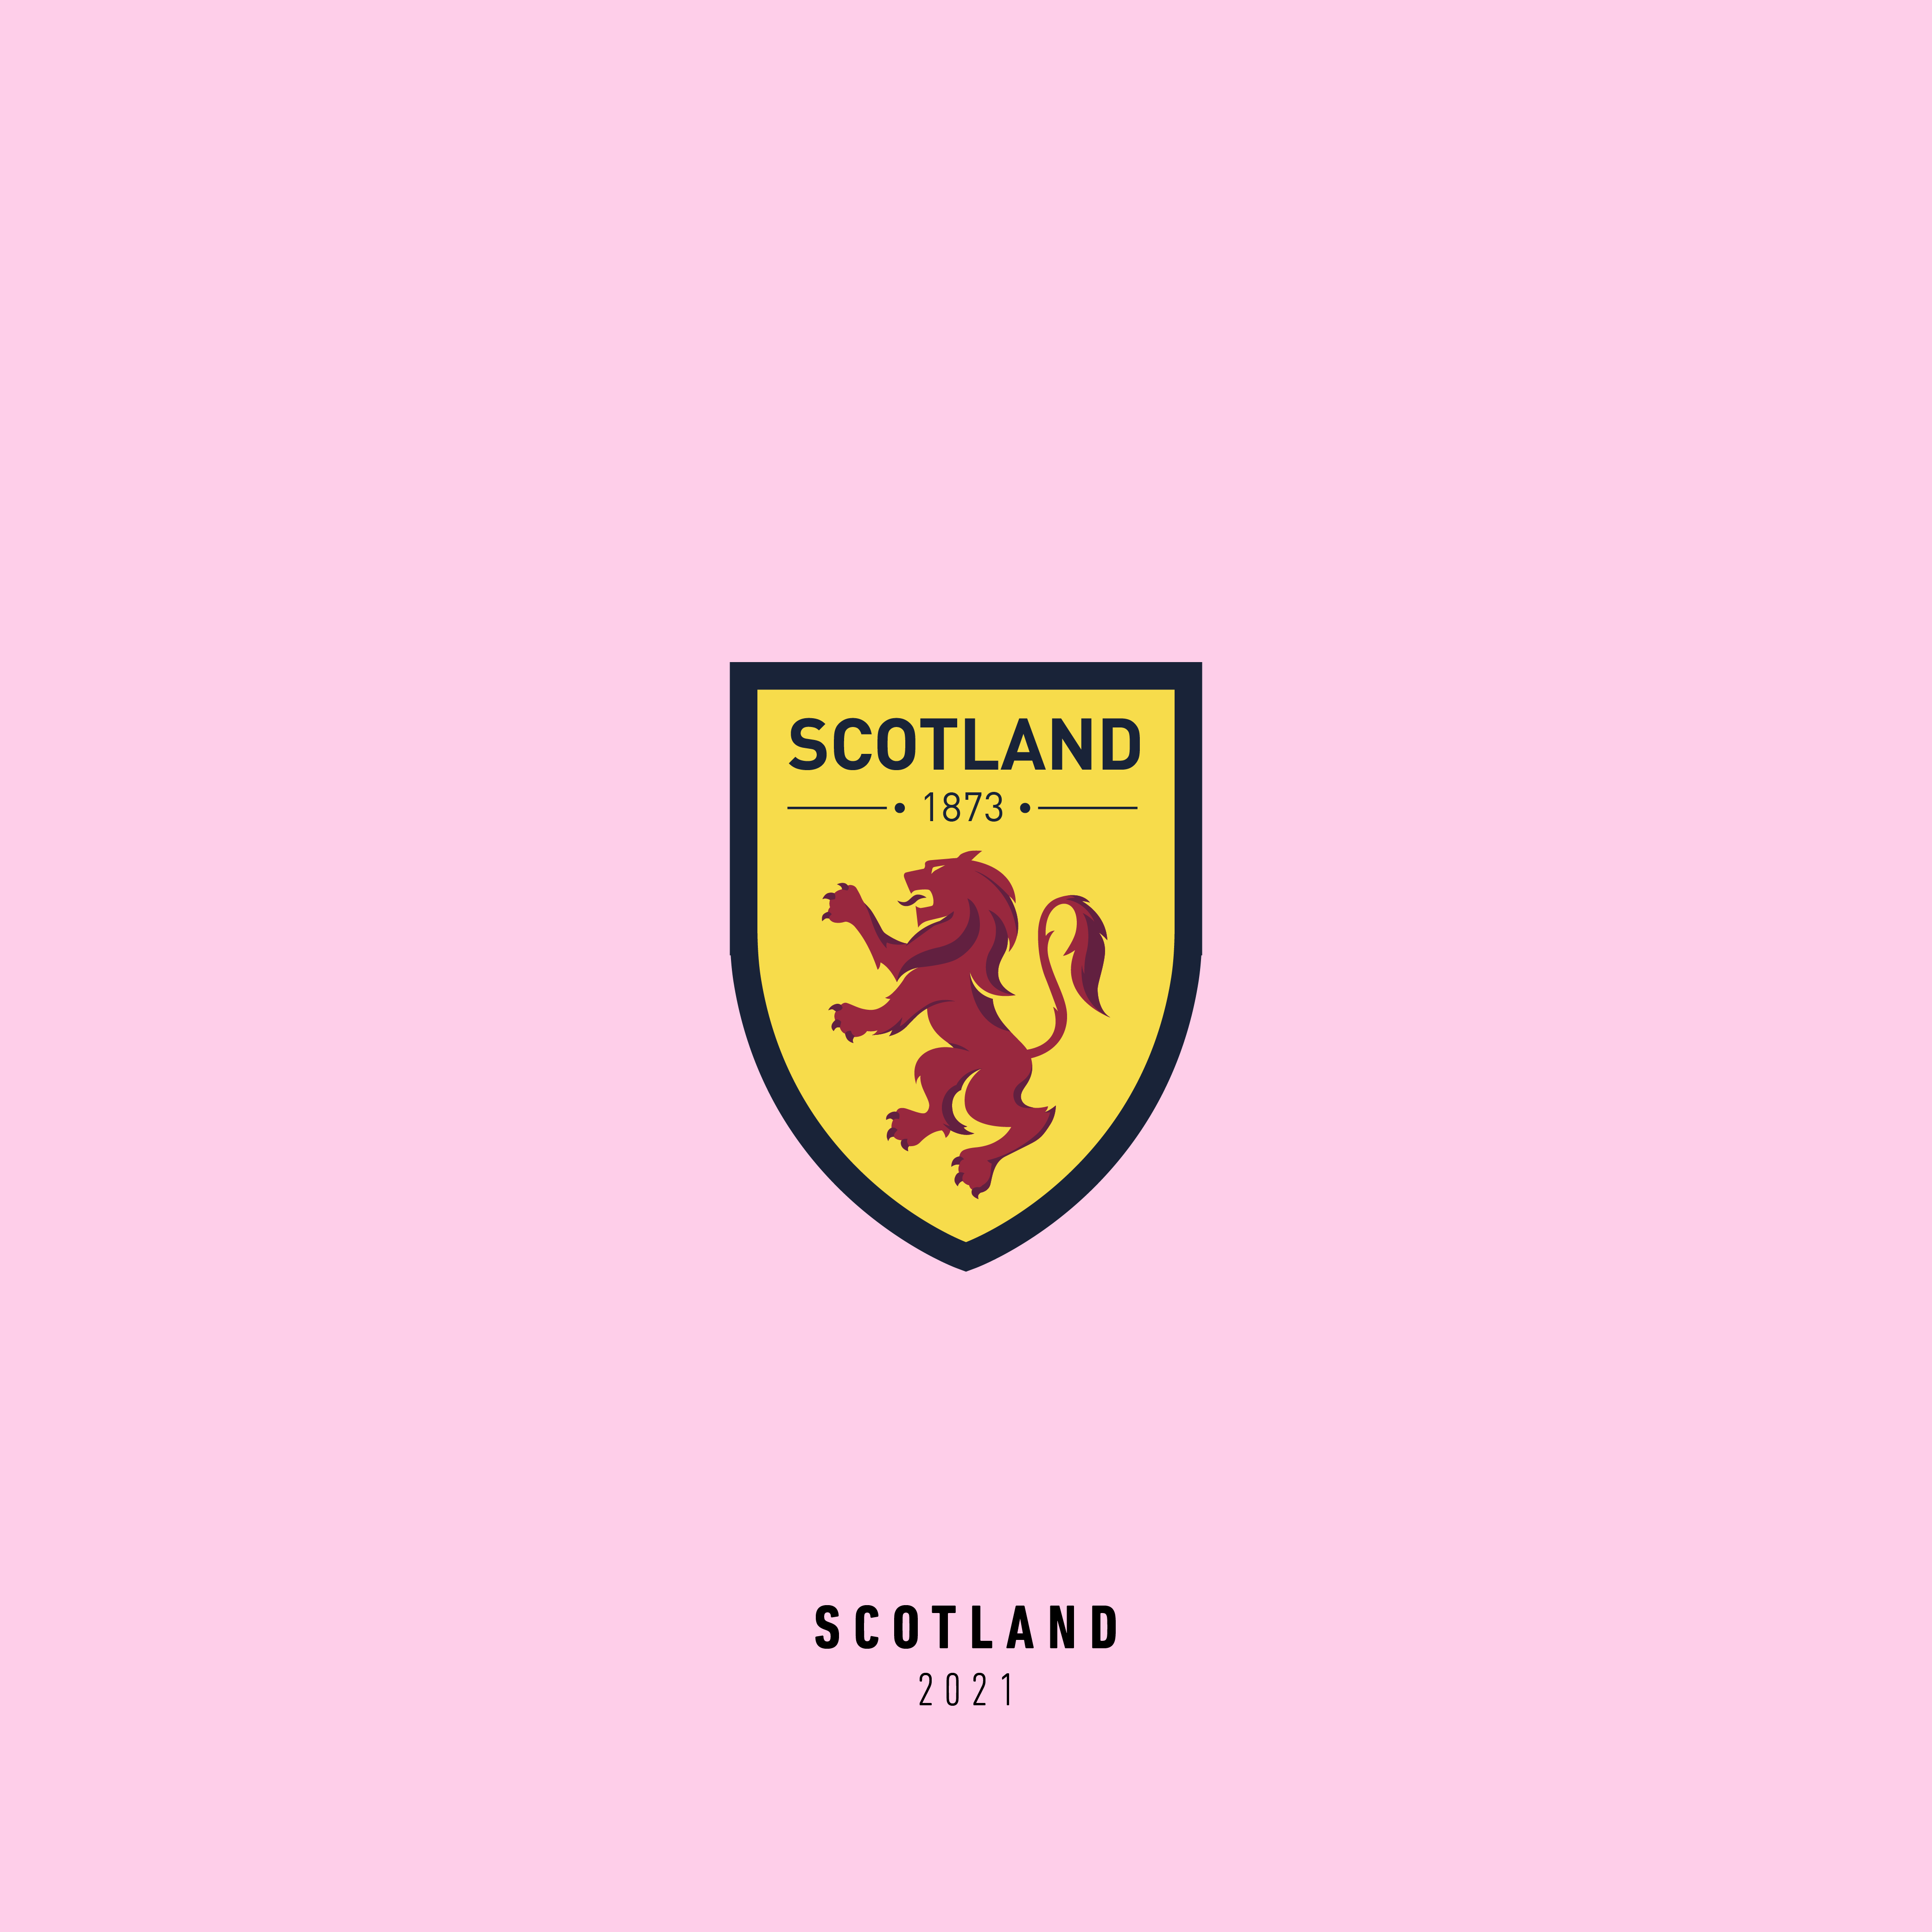 Euro2021 Scotland 2021 1